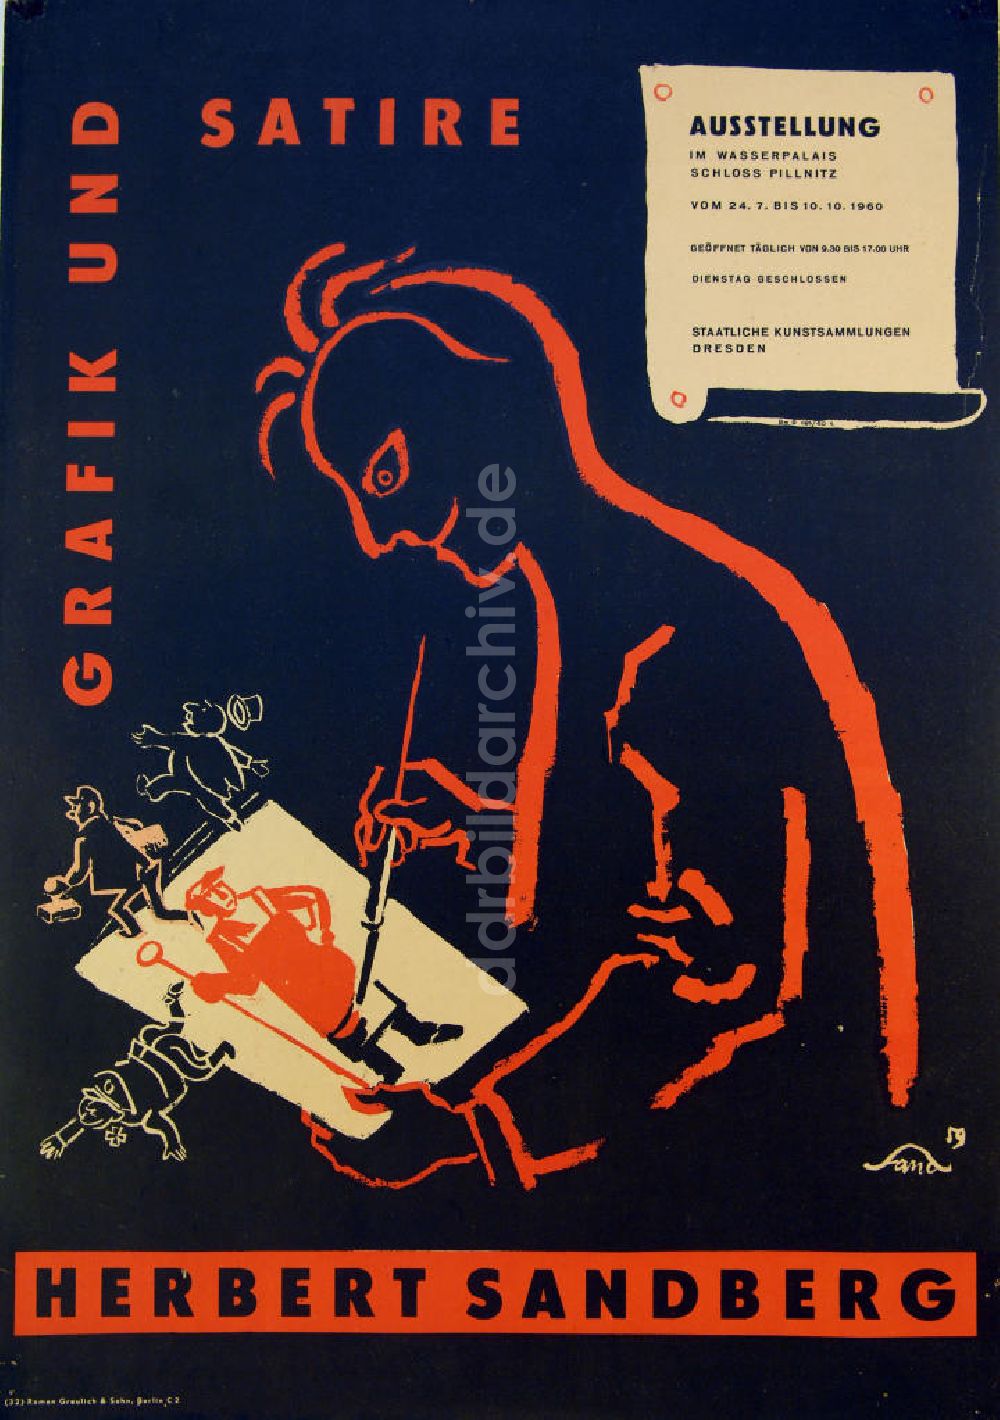 DDR-Bildarchiv: Berlin - Plakat von der Ausstellung Grafik und Satire, Herbert Sandberg aus dem Jahr 1960